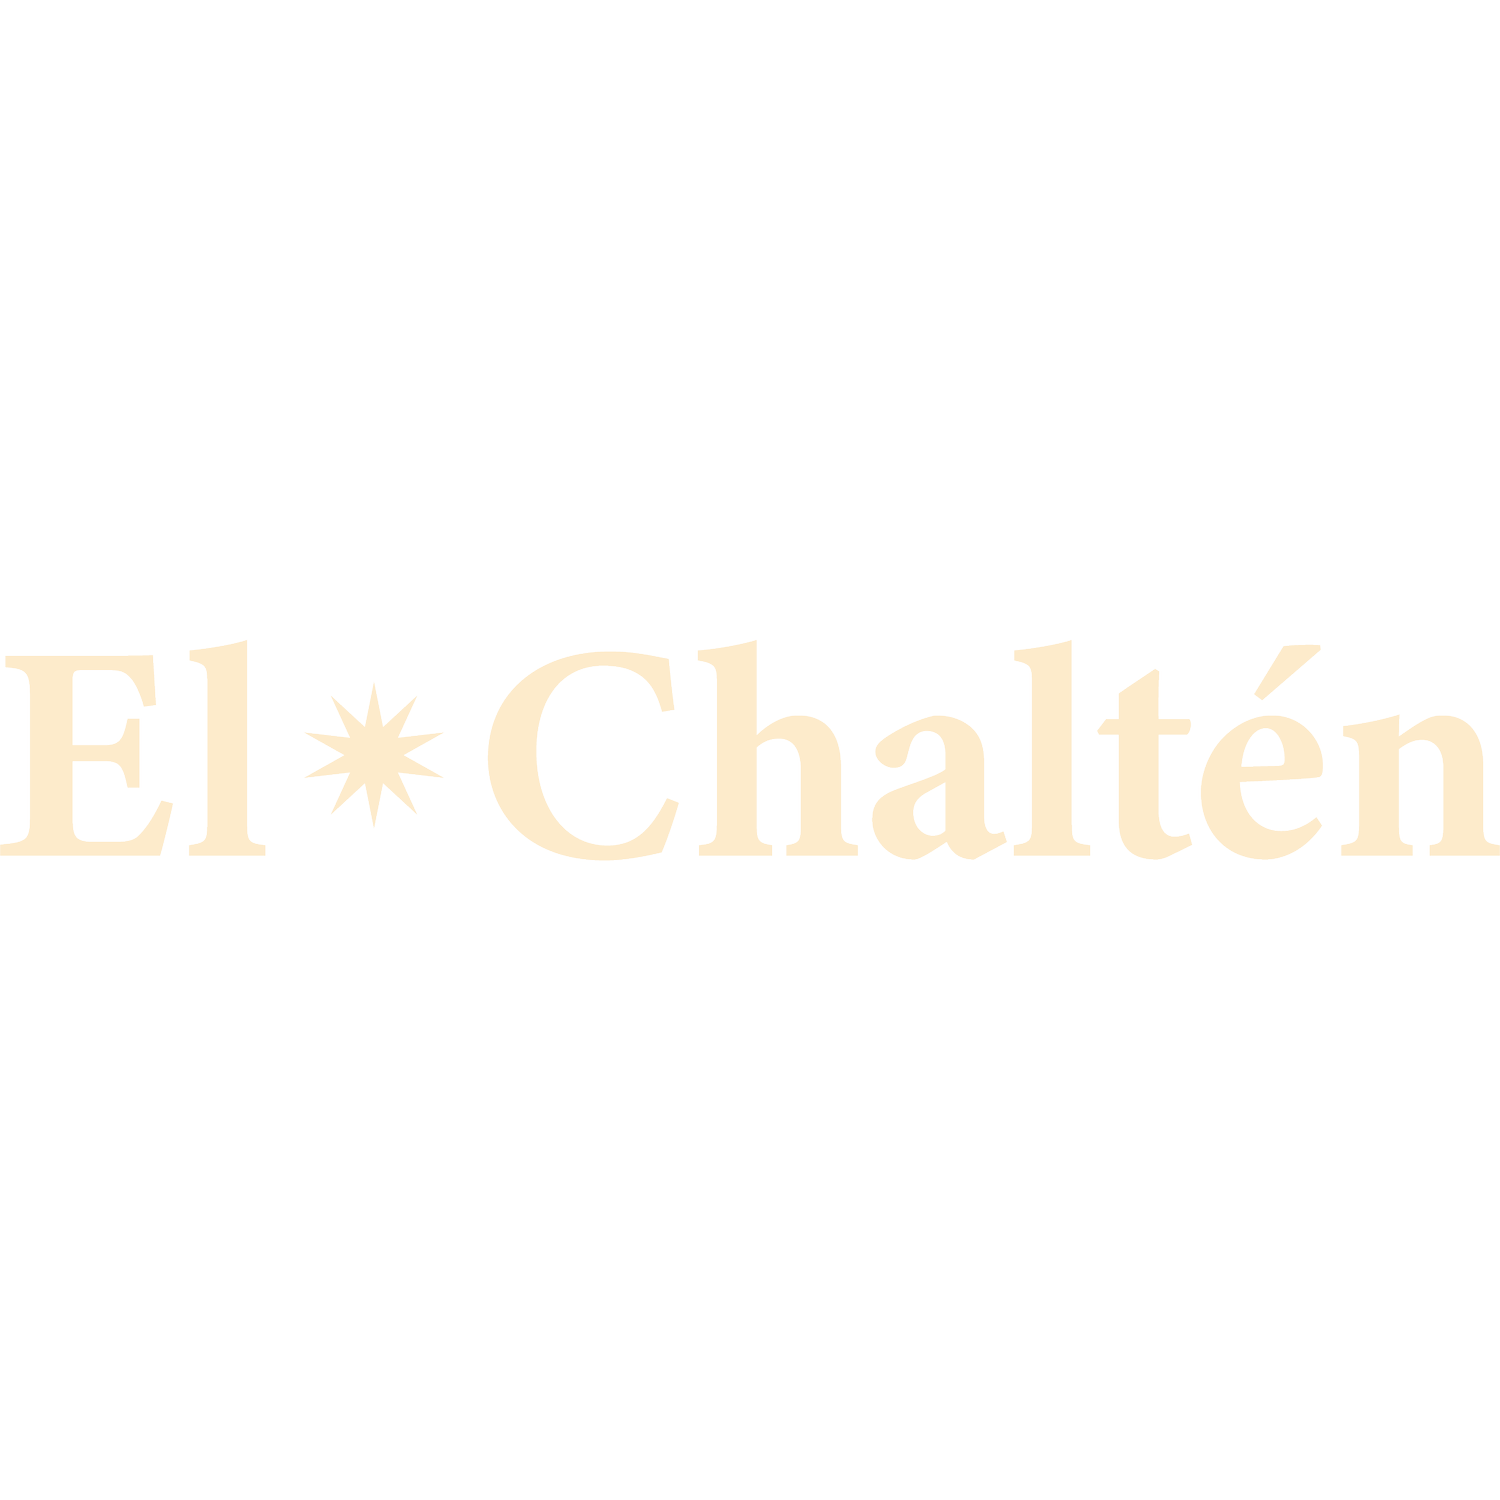 El Chaltén